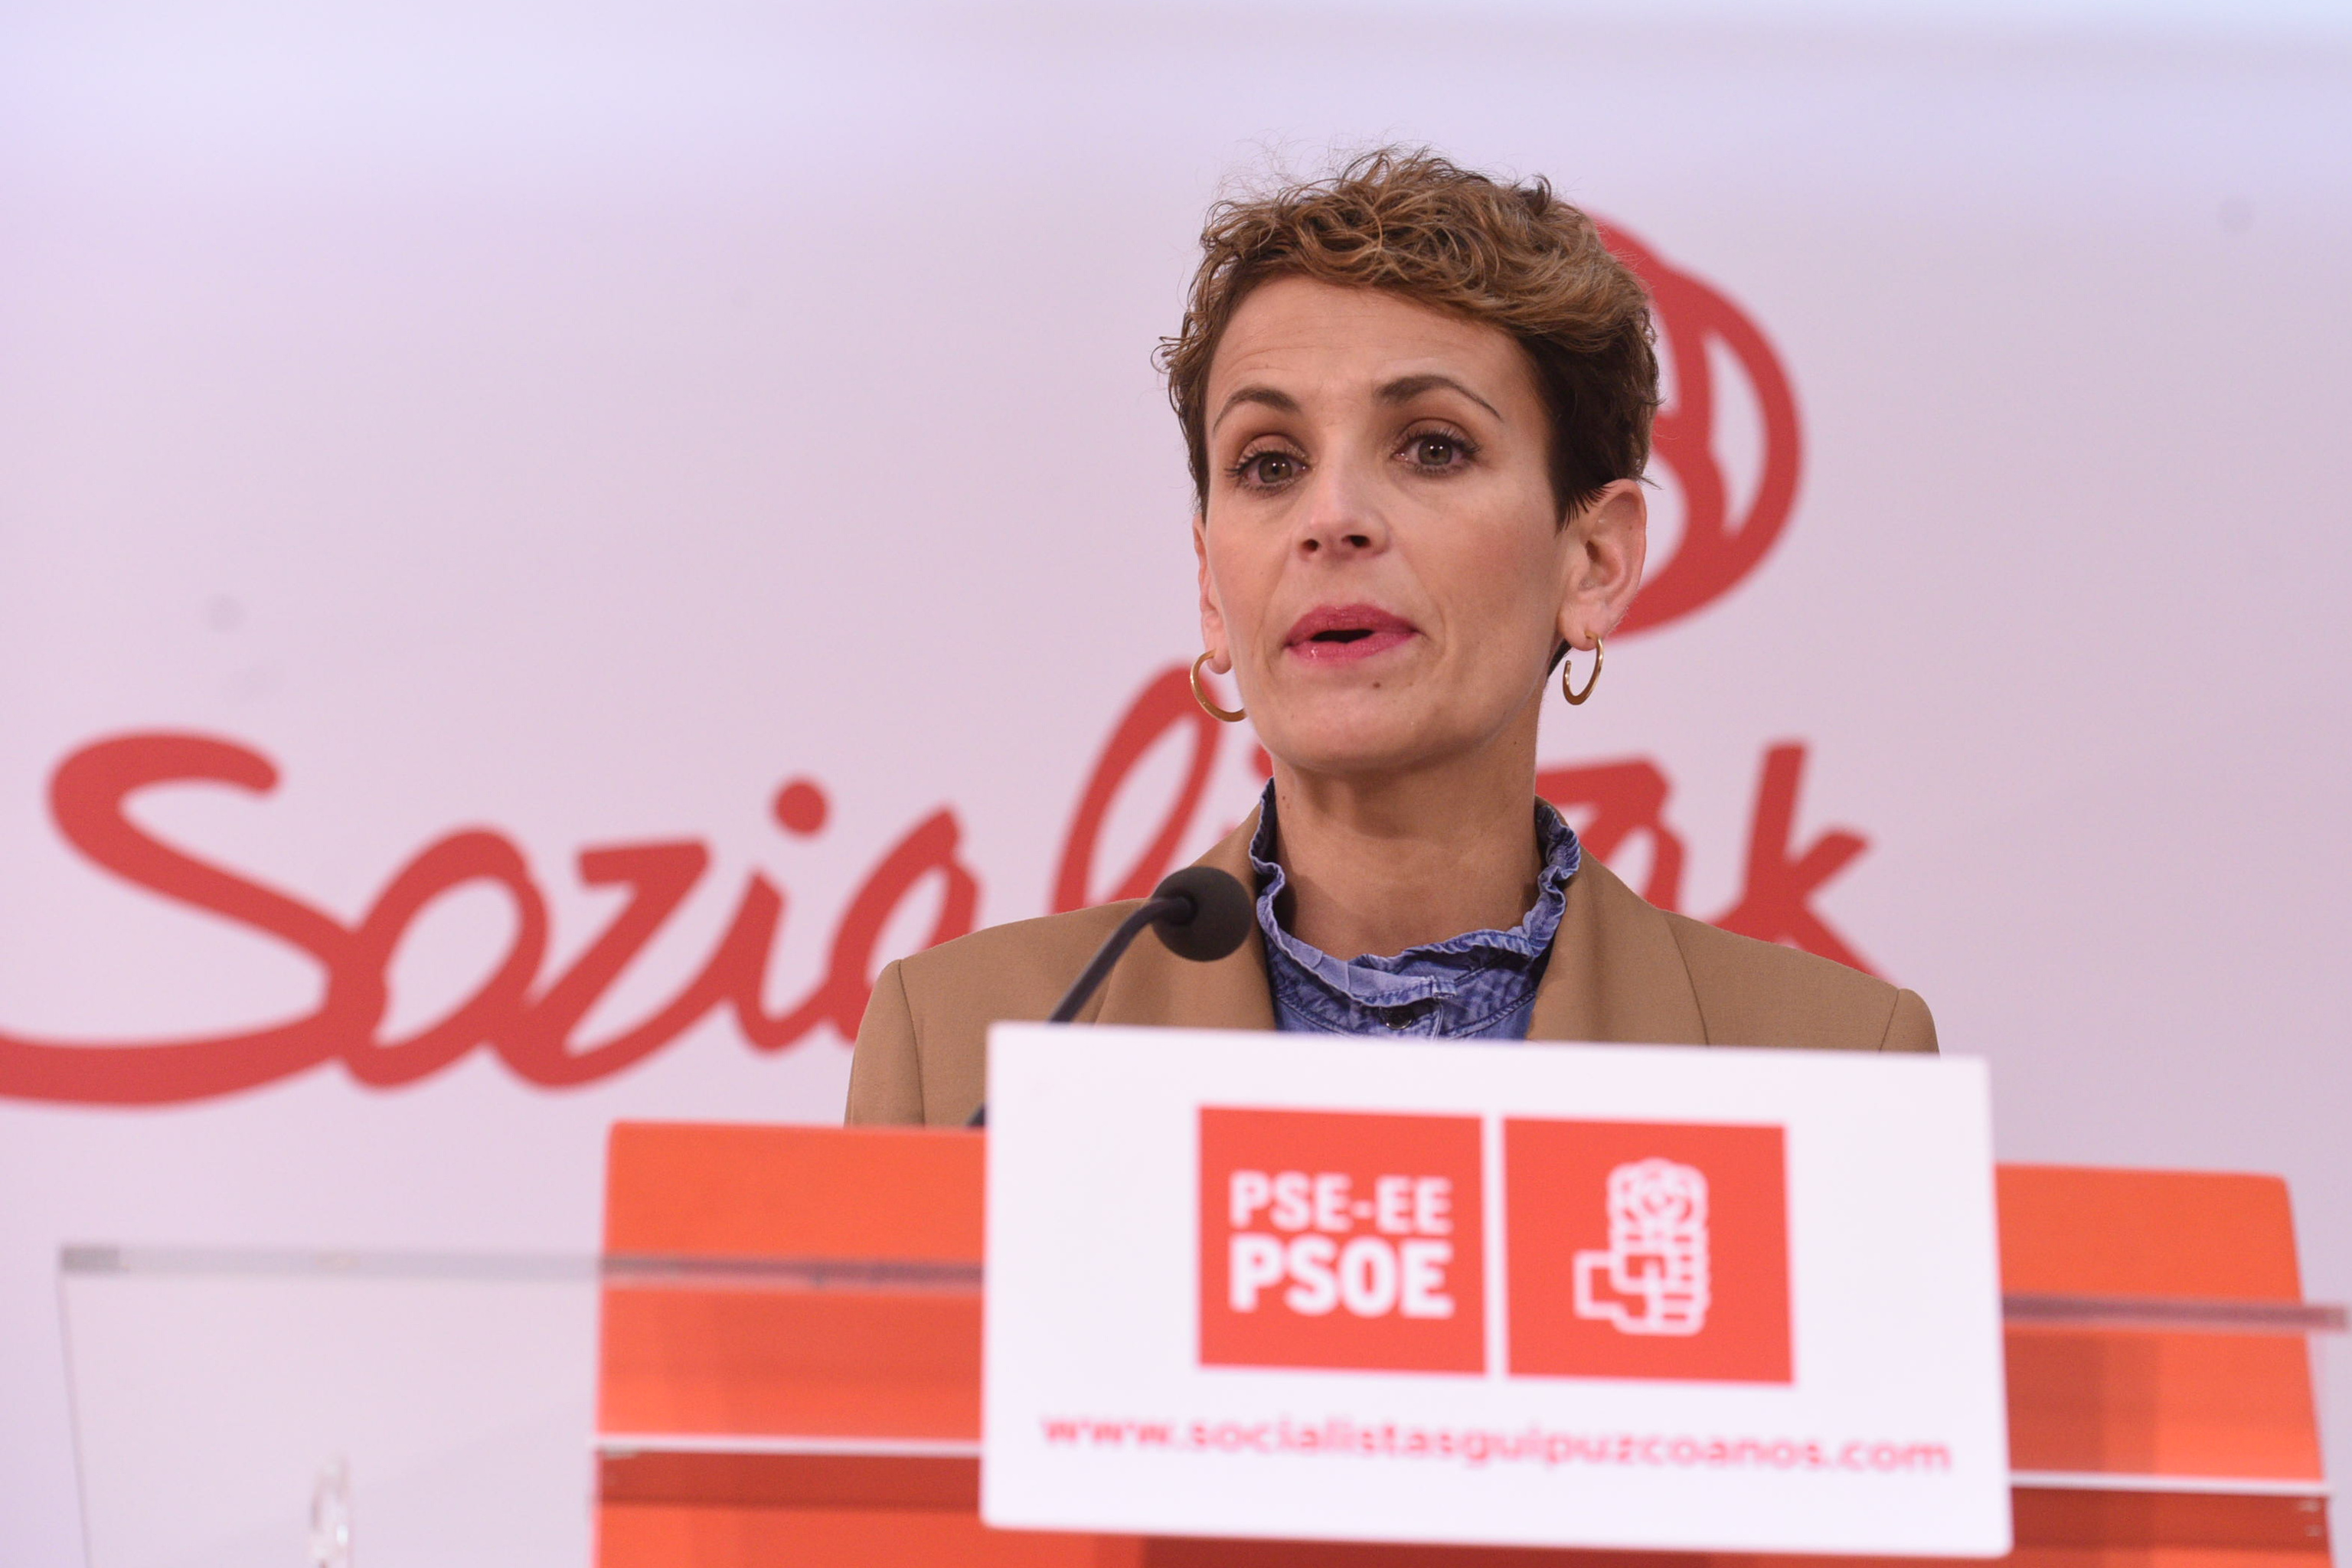 La presidenta de Navarra María Chivite en la sede del PSE en San Sebastián tras reunirse con sus compañeros en Euskadi.